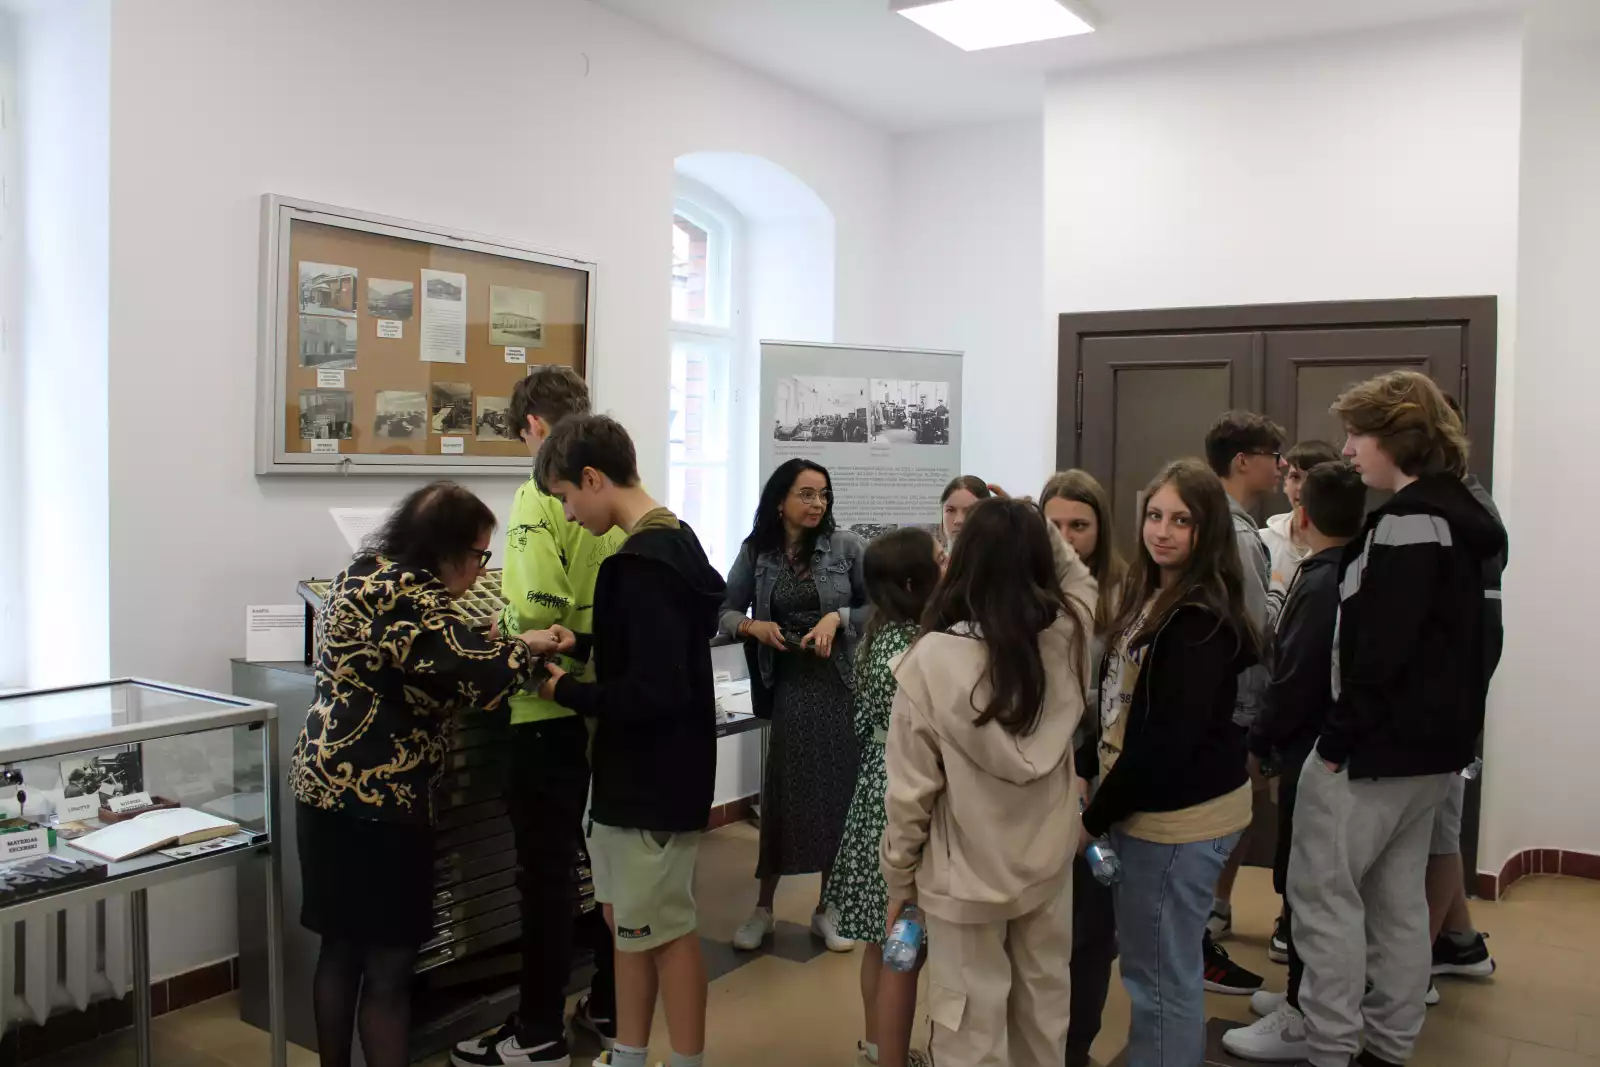 Uczniowie wraz z nauczycielami i prowadzącymi oglądają eksponaty muzealne.